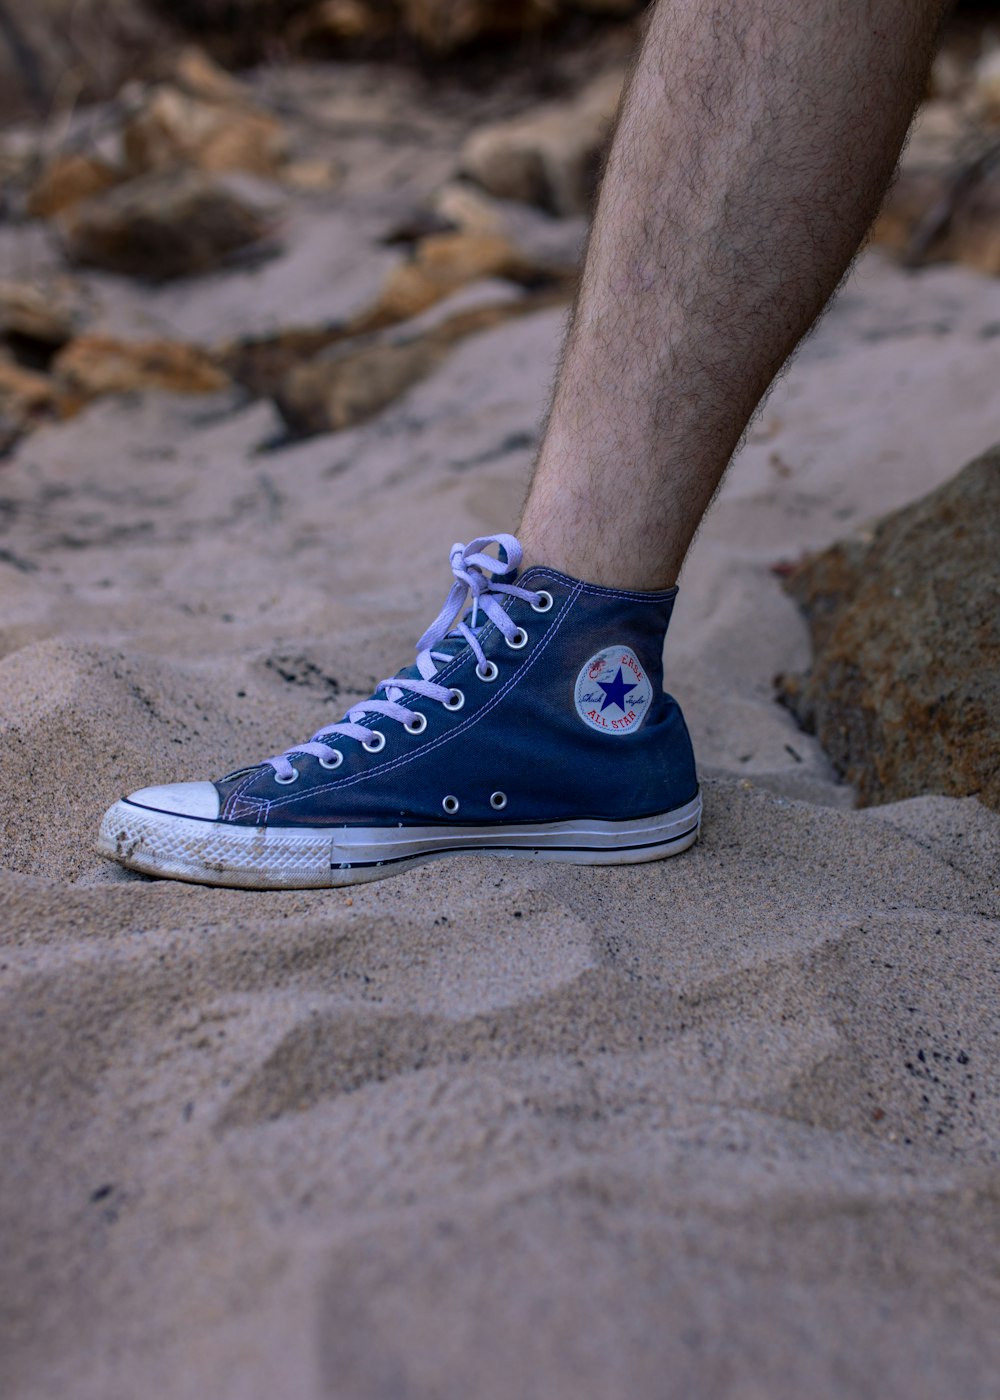 Foto persona con zapatillas altas azules converse all star – Imagen Azul  gratis en Unsplash